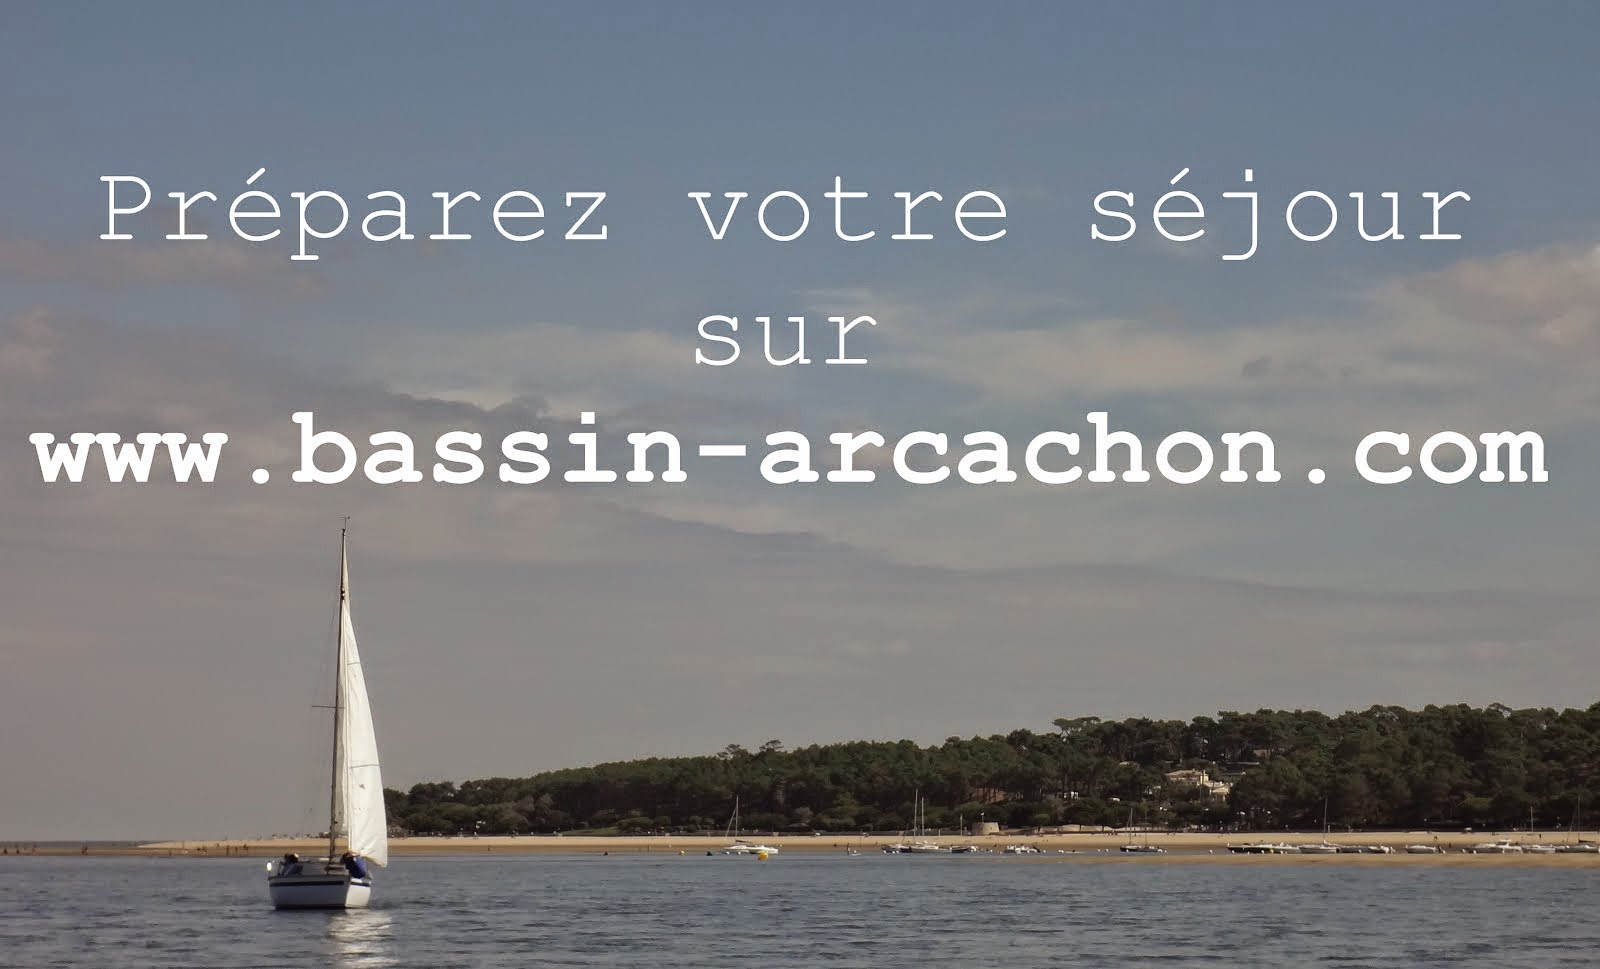 Retrouvez le portail touristique officiel du Bassin d’Arcachon ci-dessous :